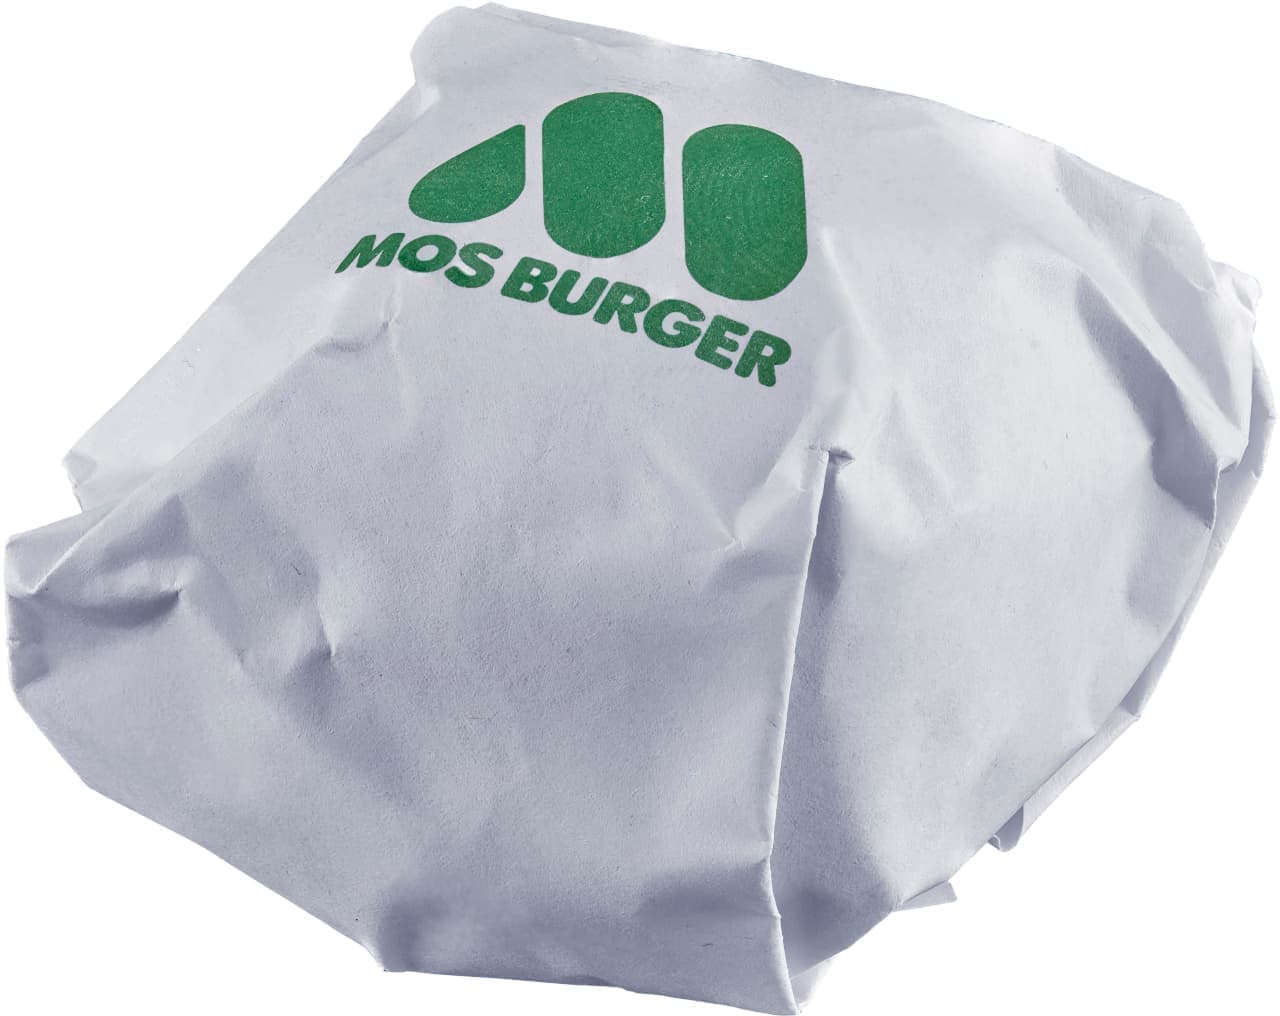 Mos Burger "Unitrobo Unit Mos Burger"